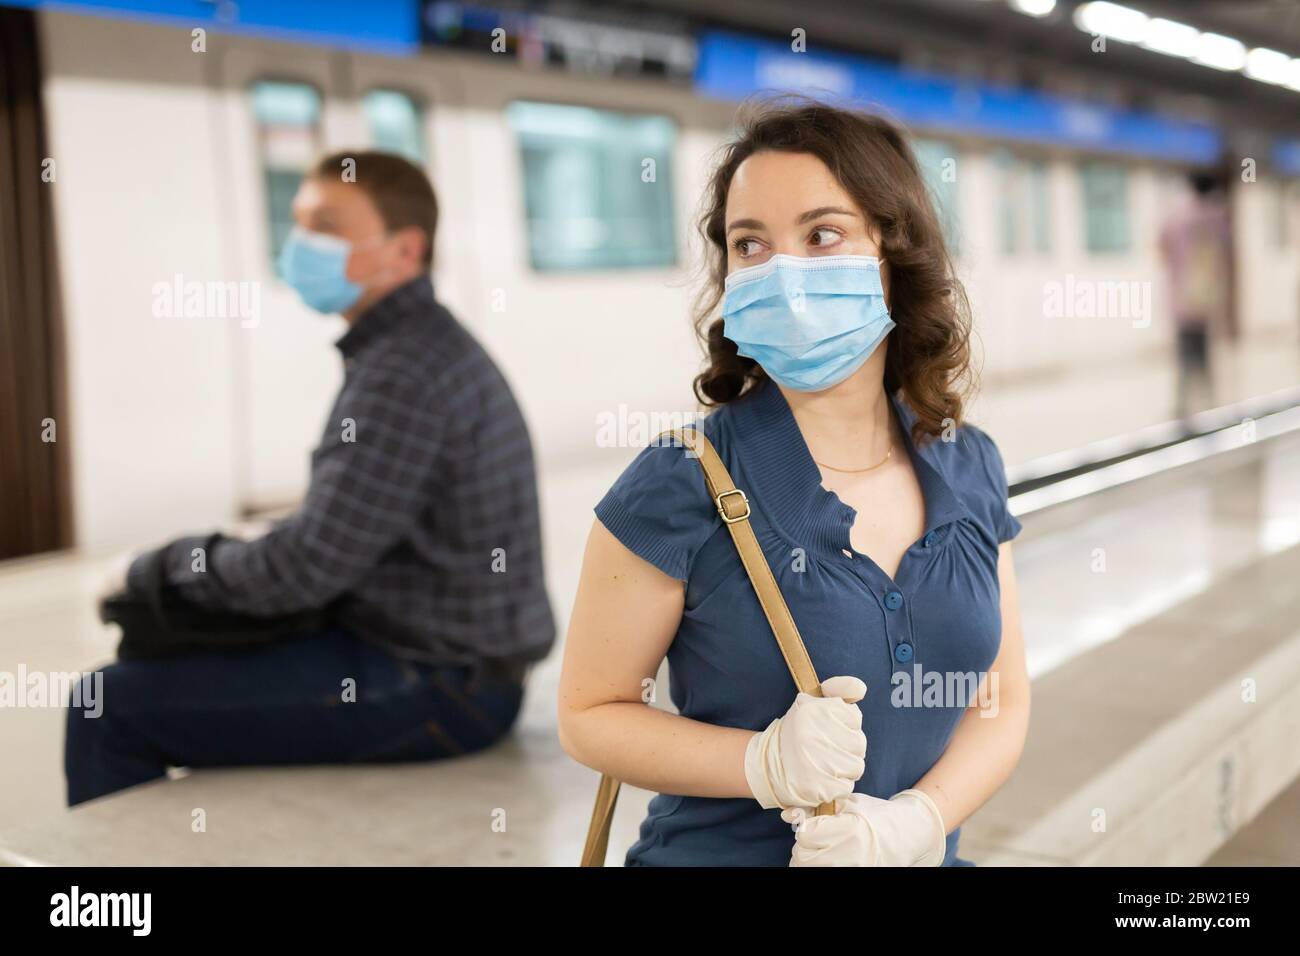 Attraktive Frau trägt medizinische Maske und Gummihandschuhe warten auf Zug  in Plattform der U-Bahn-Station. Neue Lebenswirklichkeit während COVID 19  pandemi Stockfotografie - Alamy